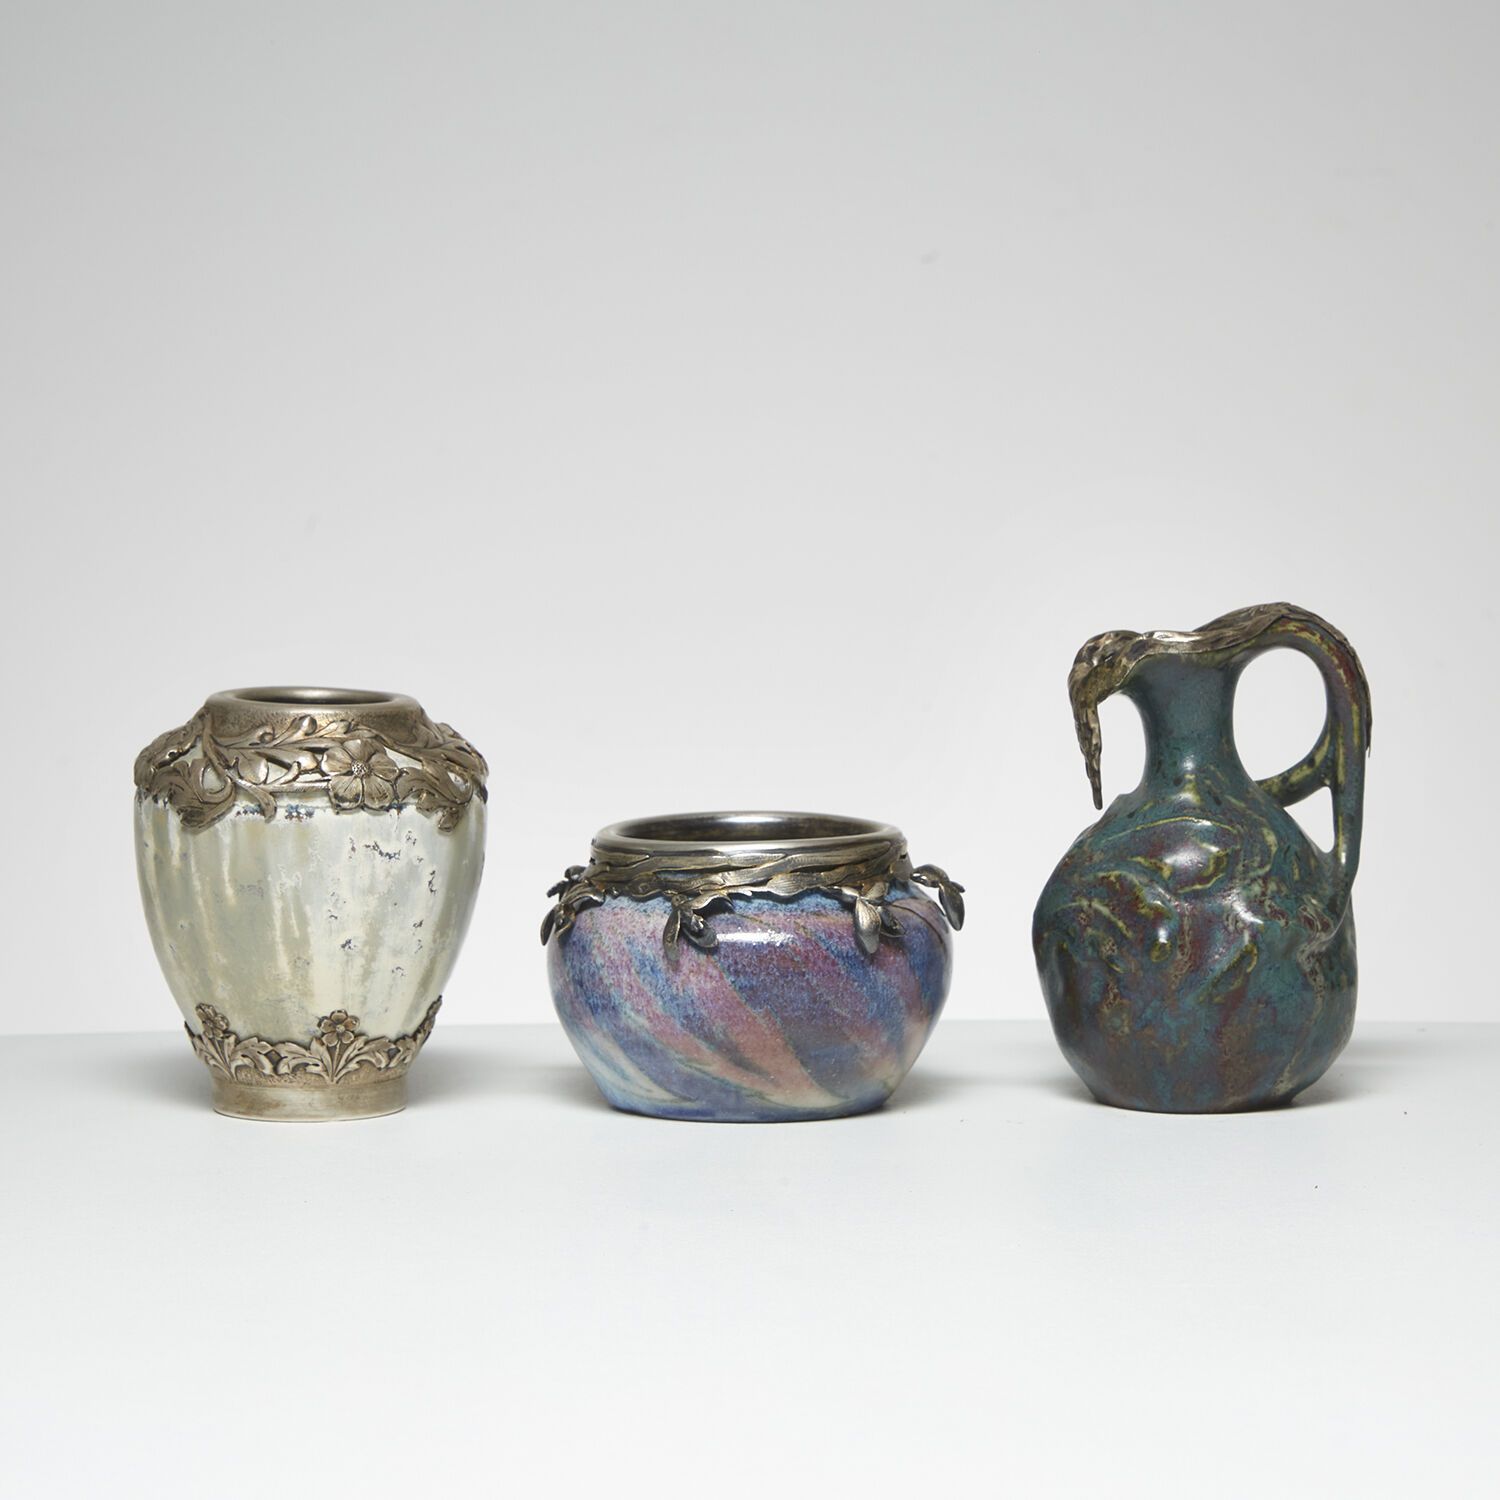 EDMOND LACHENAL (1855-1948) EDMOND LACHENAL (1855-1948)
Petit vase, circa 1895, &hellip;